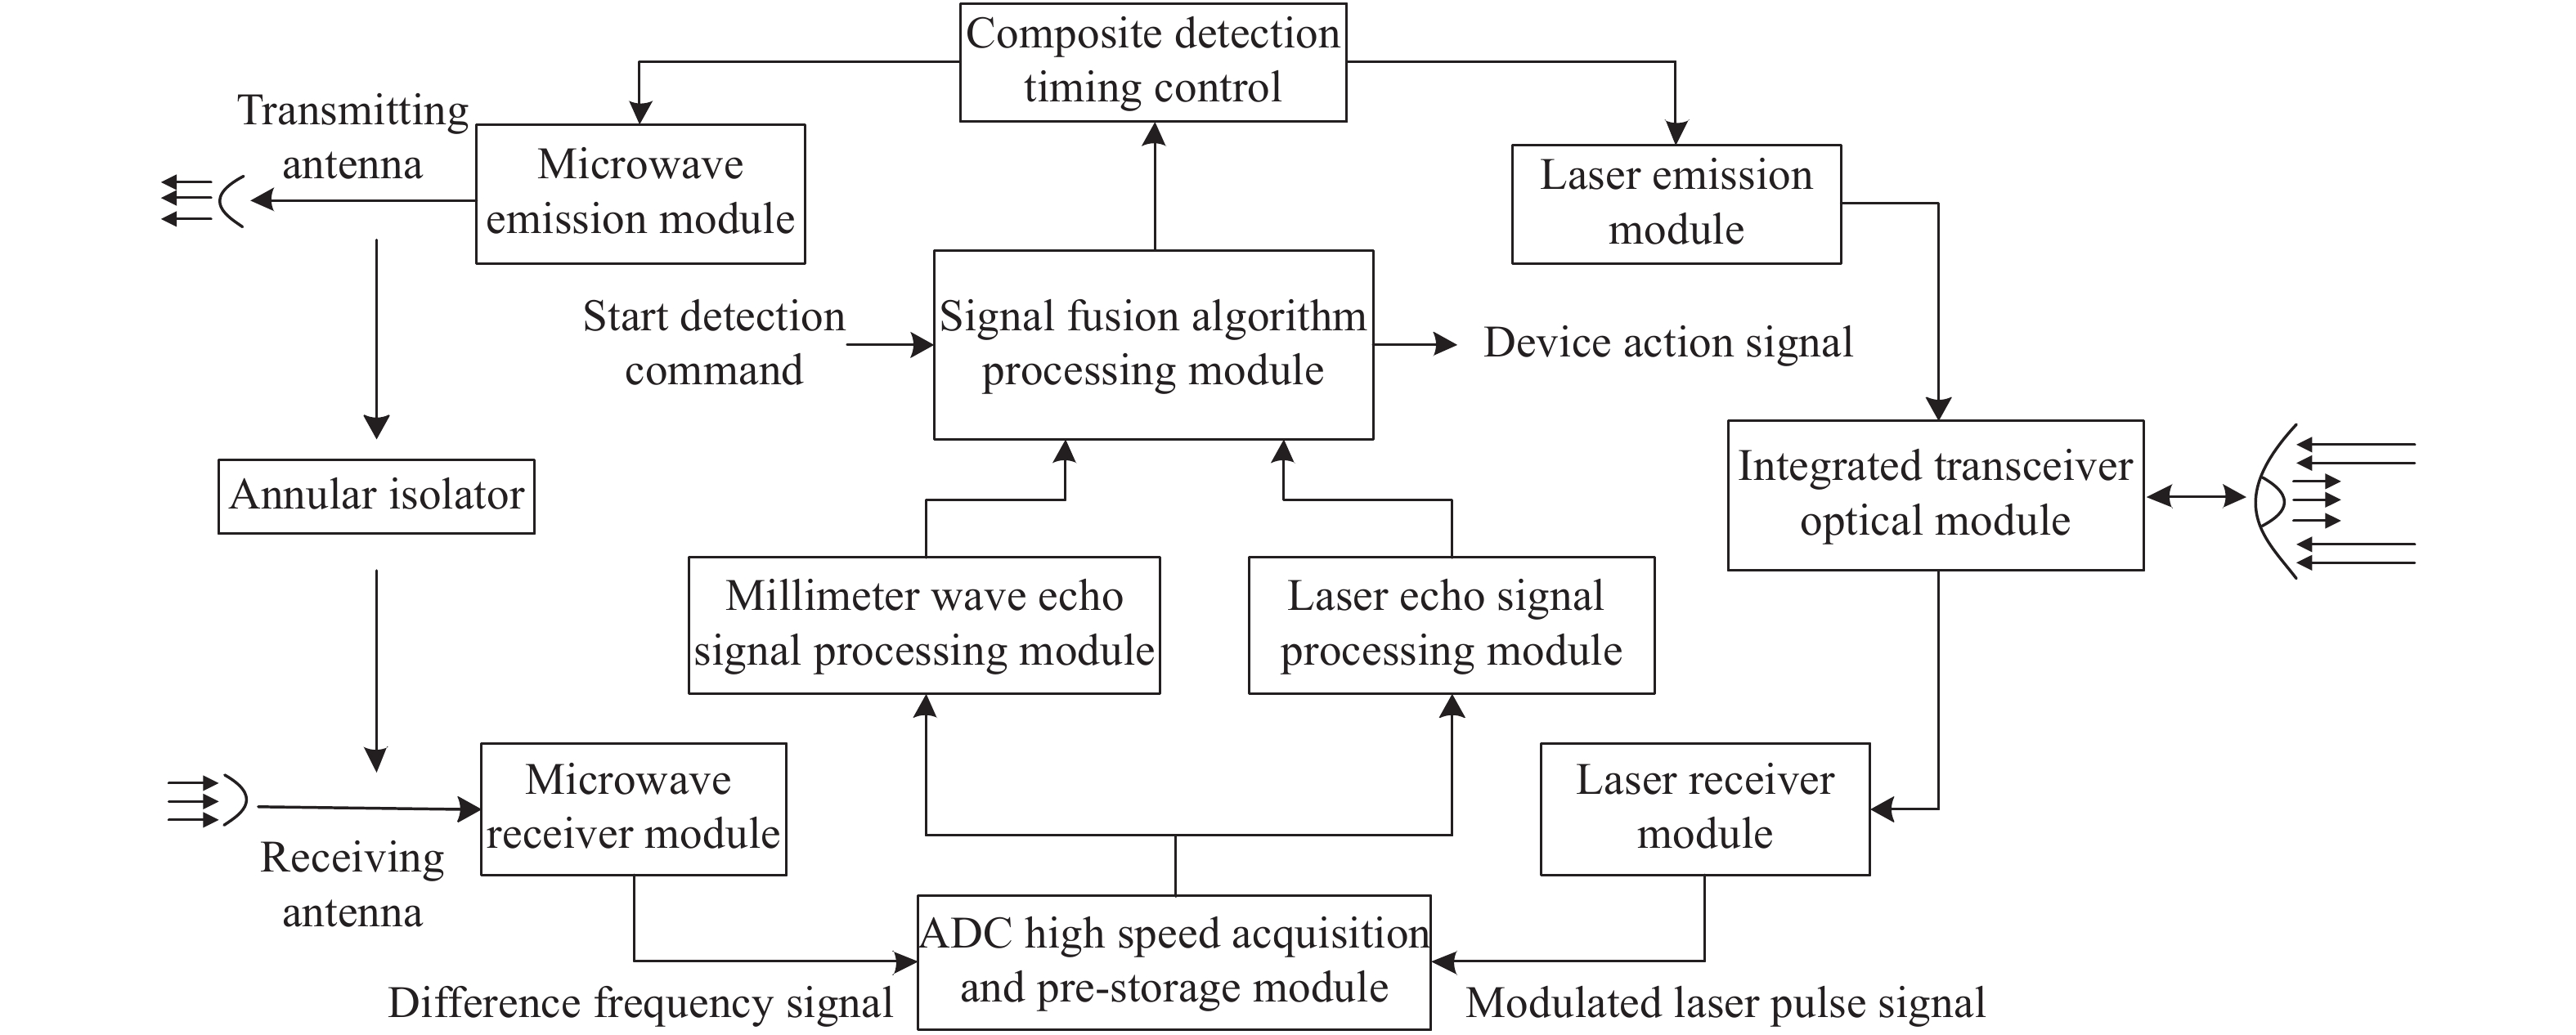 Laser/millimeter wave composite detection system model